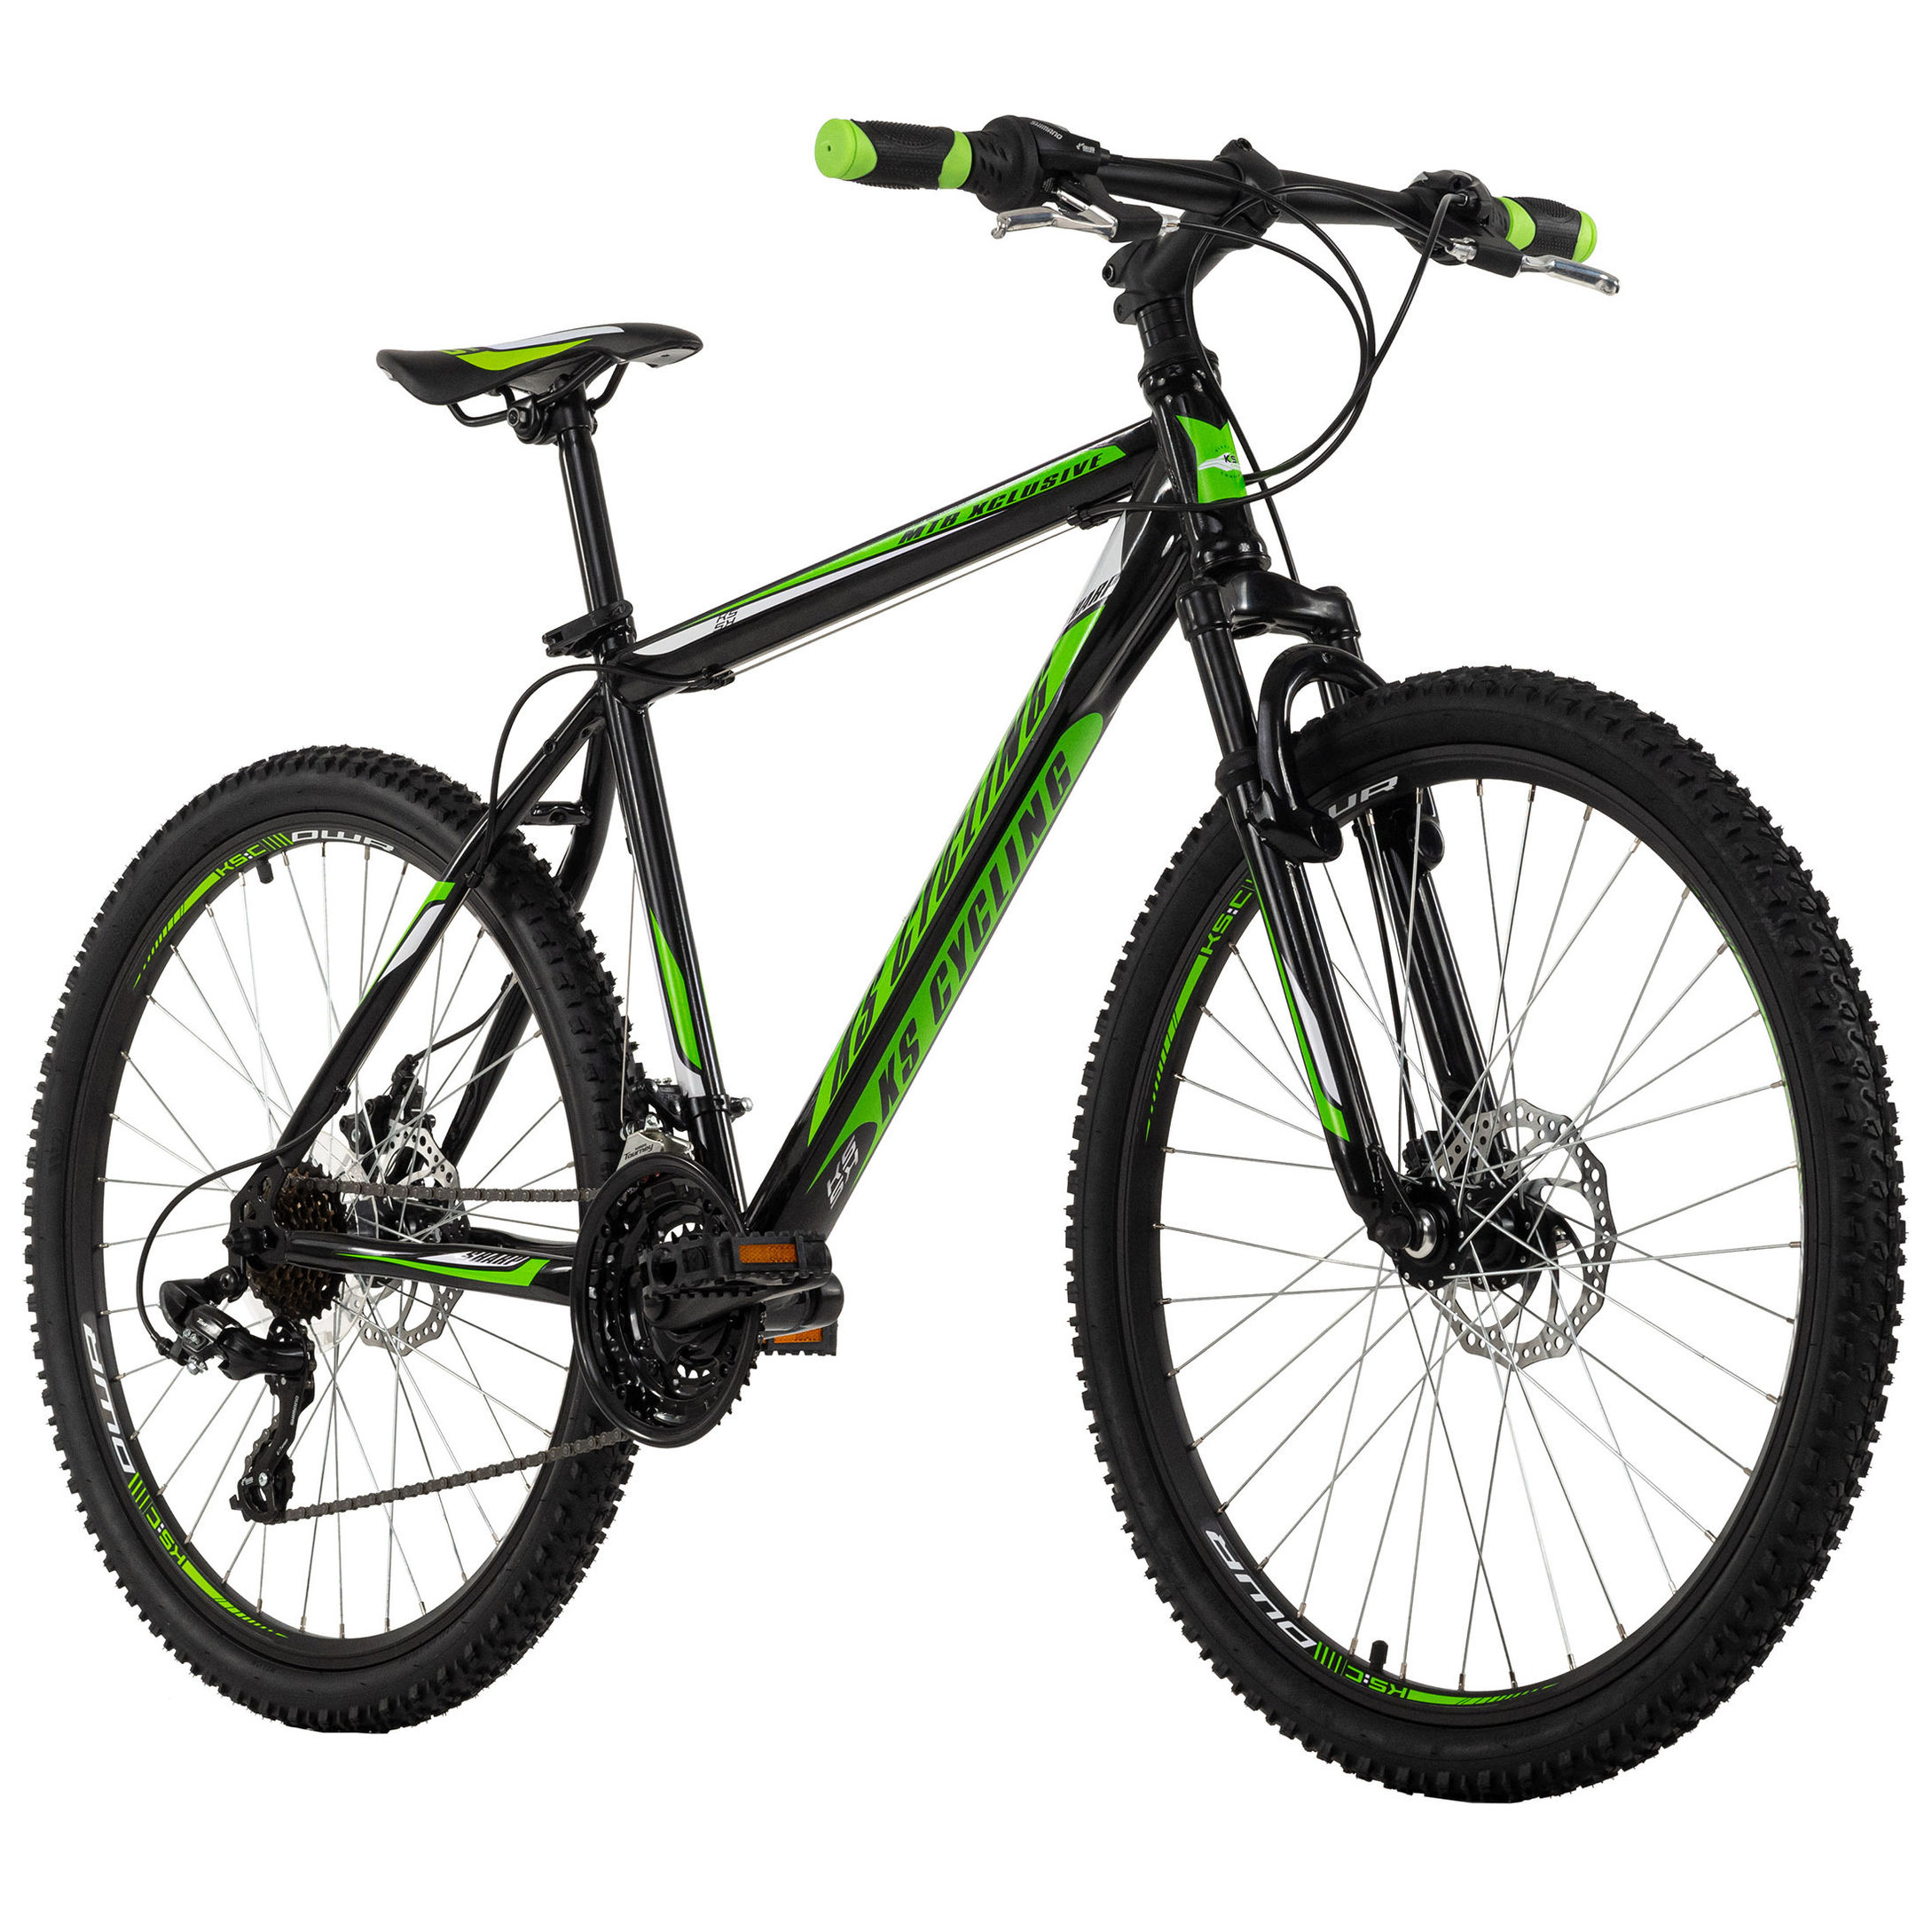 KS Cycling Mountainbike Hardtail 26 Zoll Sharp schwarz-grün schwarz-grün  Größe: 46 cm online kaufen - Orbisana